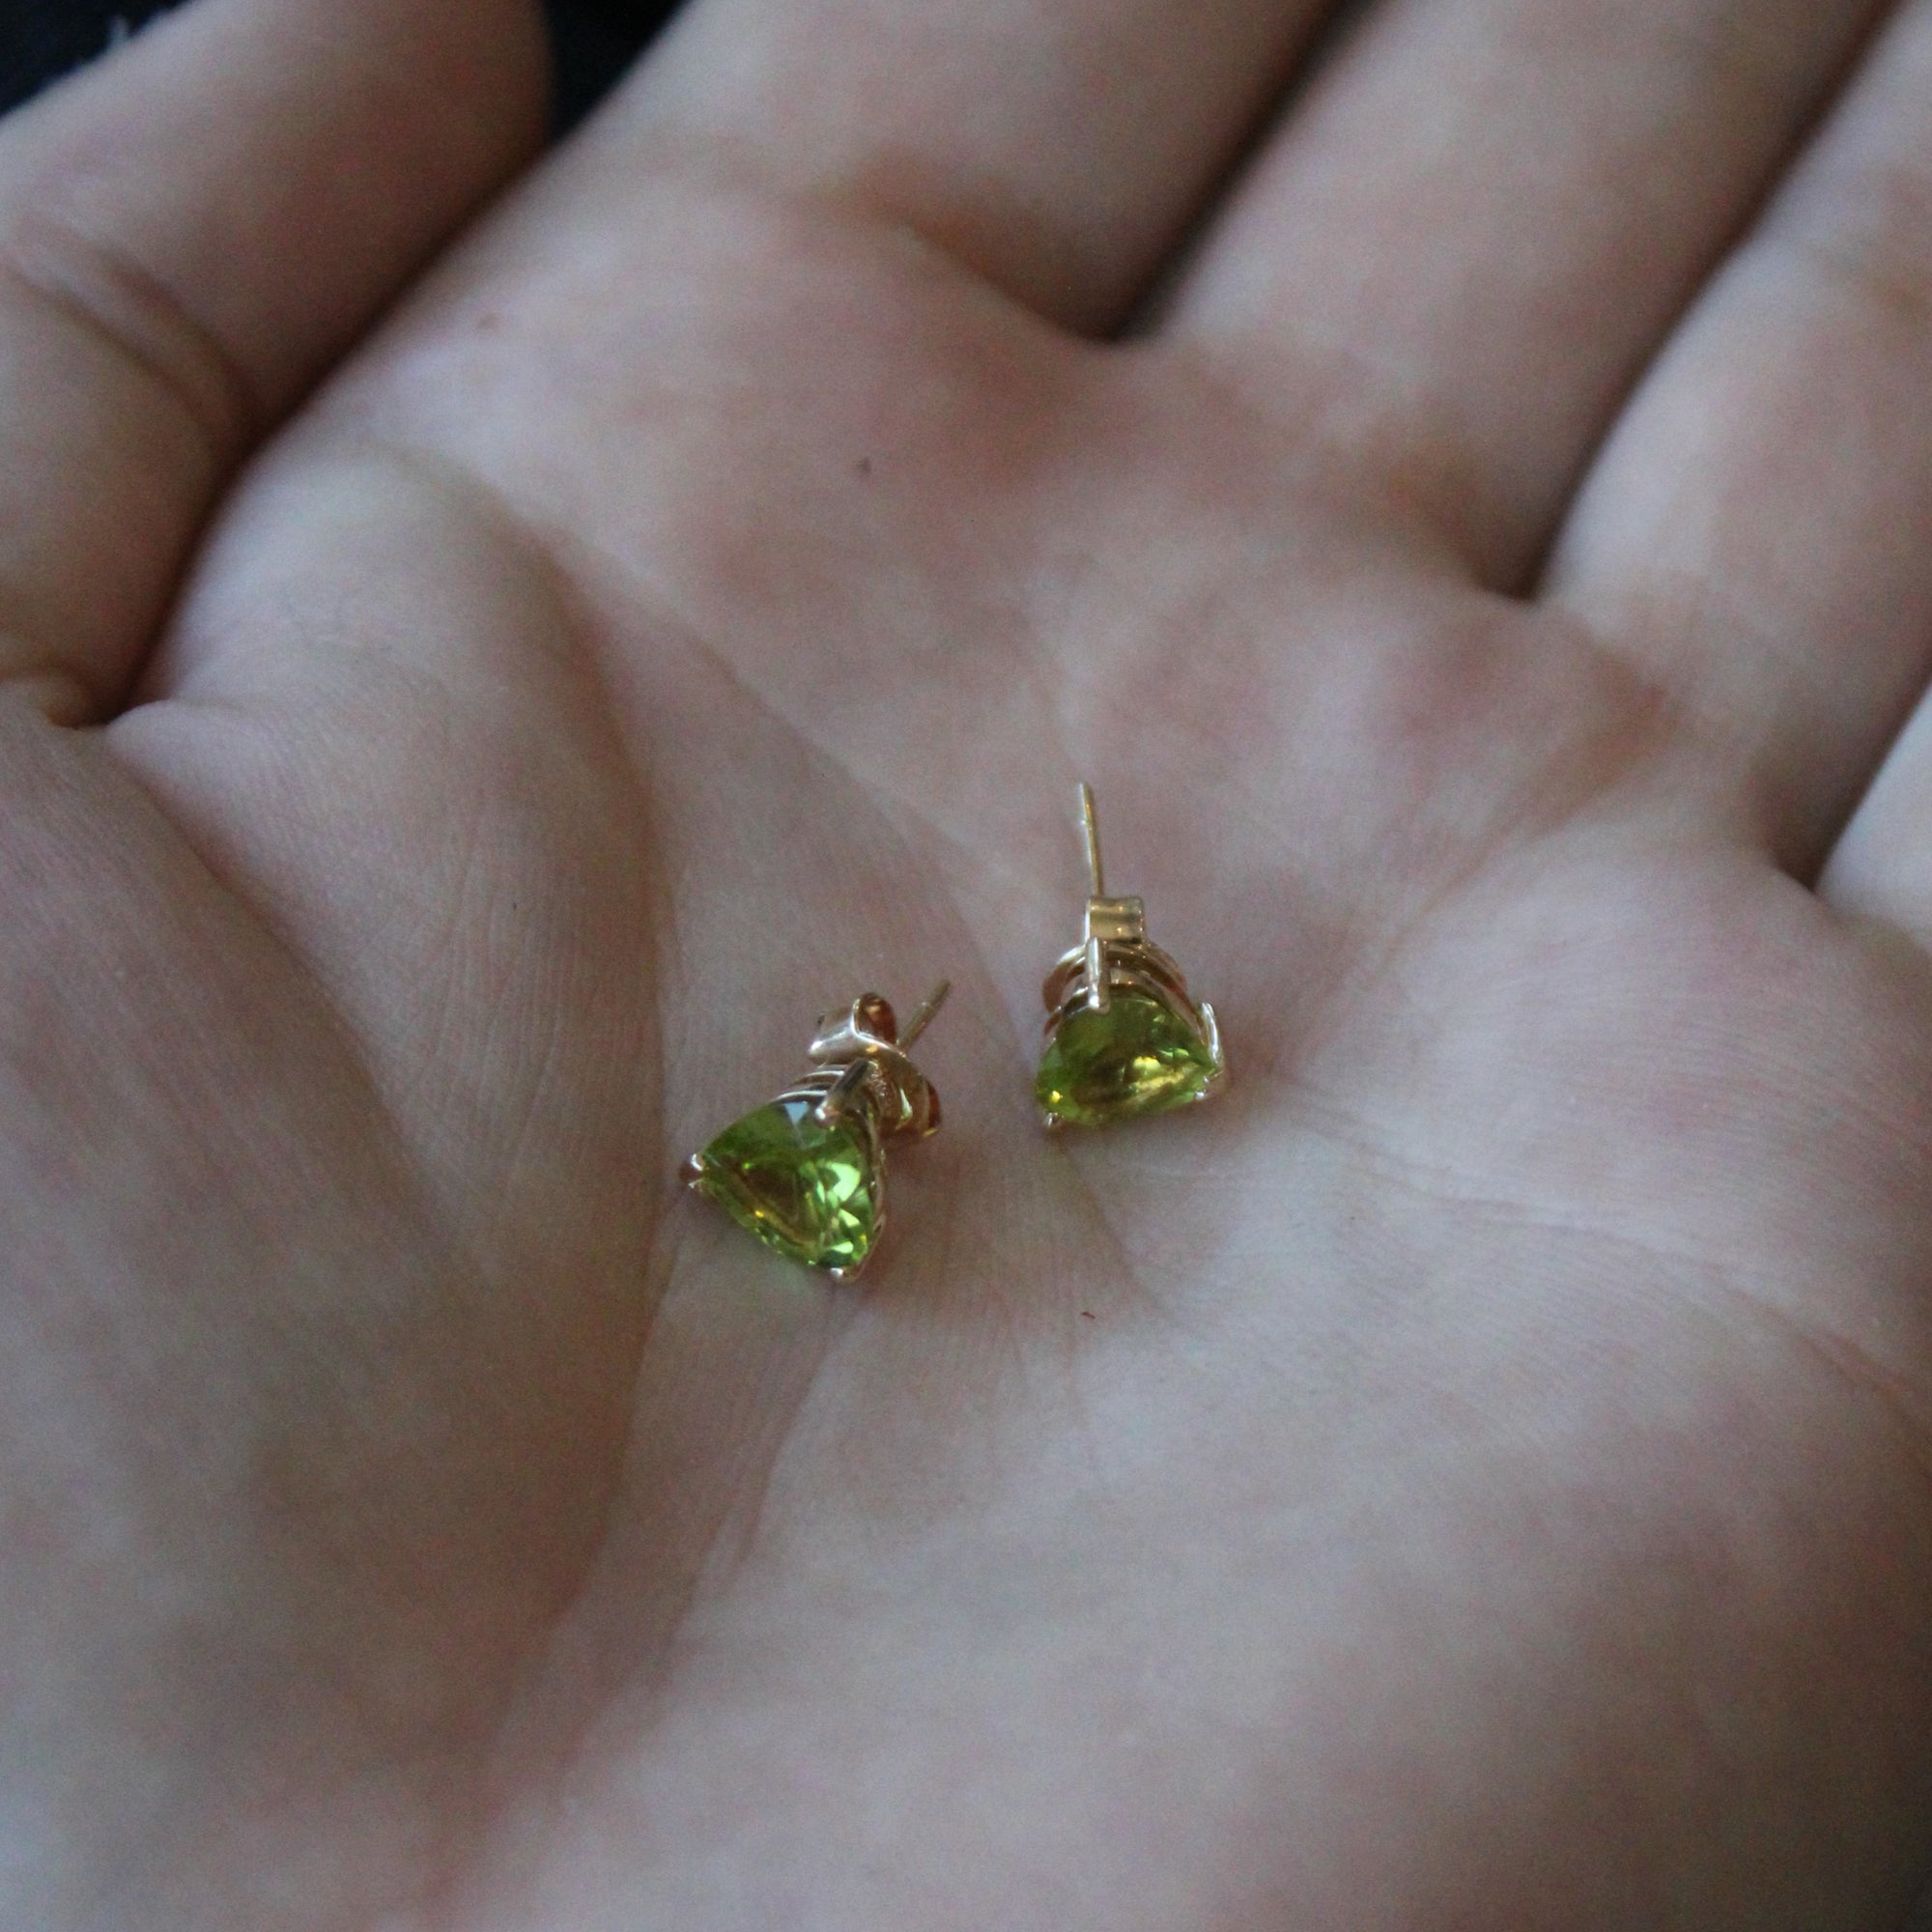 Peridot Heart Stud Earrings | 2.50ctw |